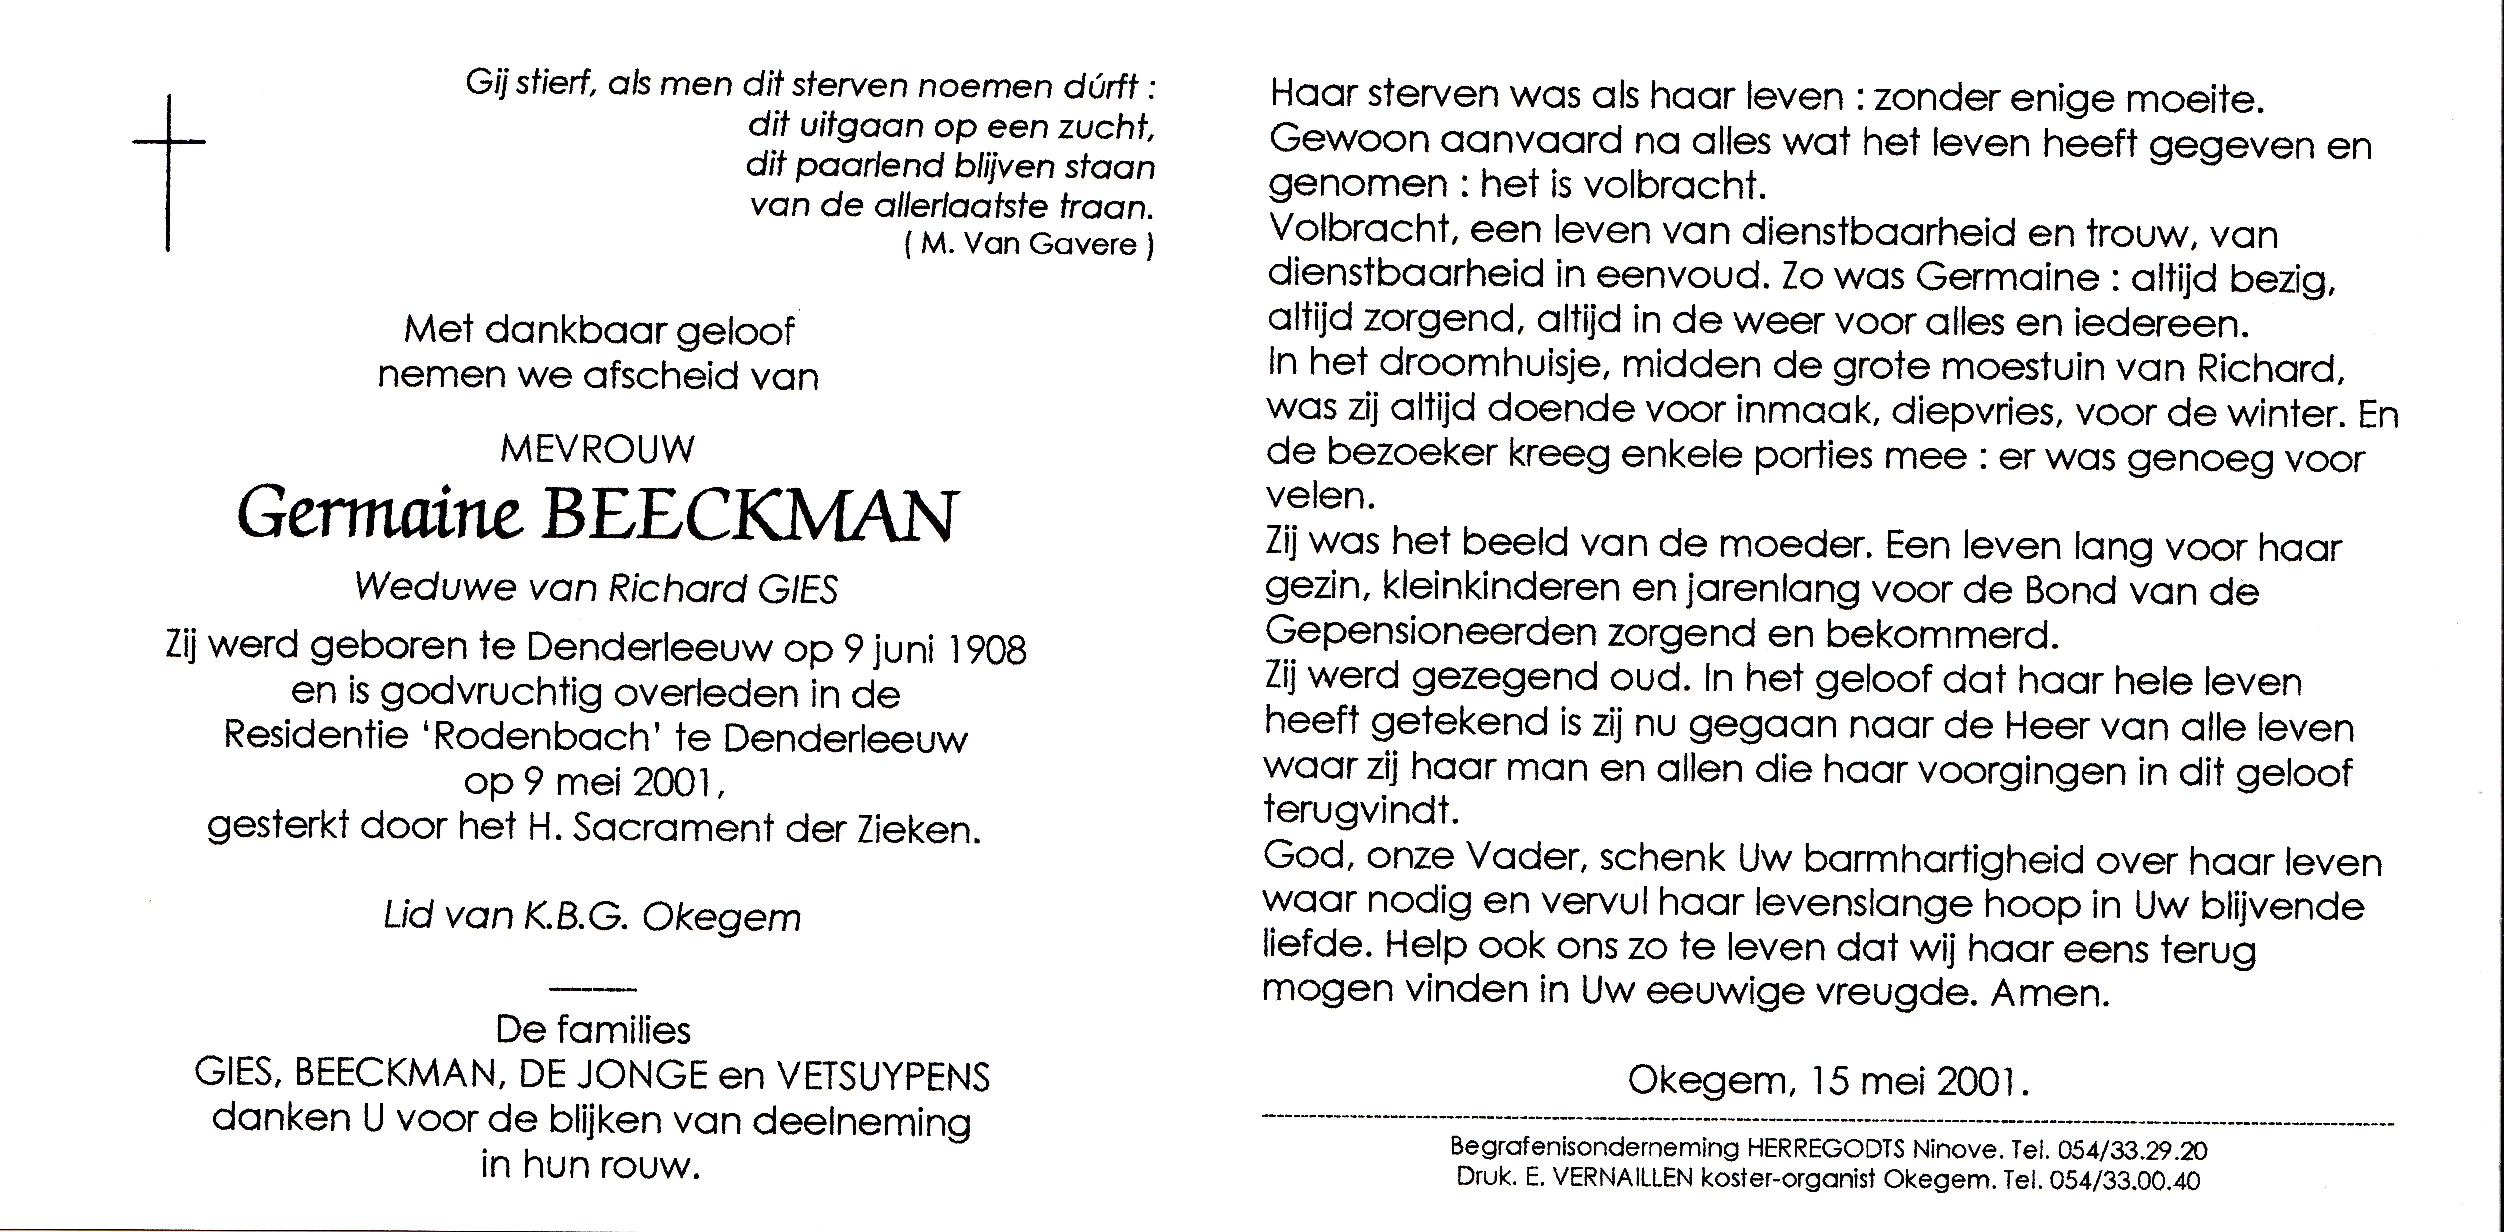 Beeckman Germaine